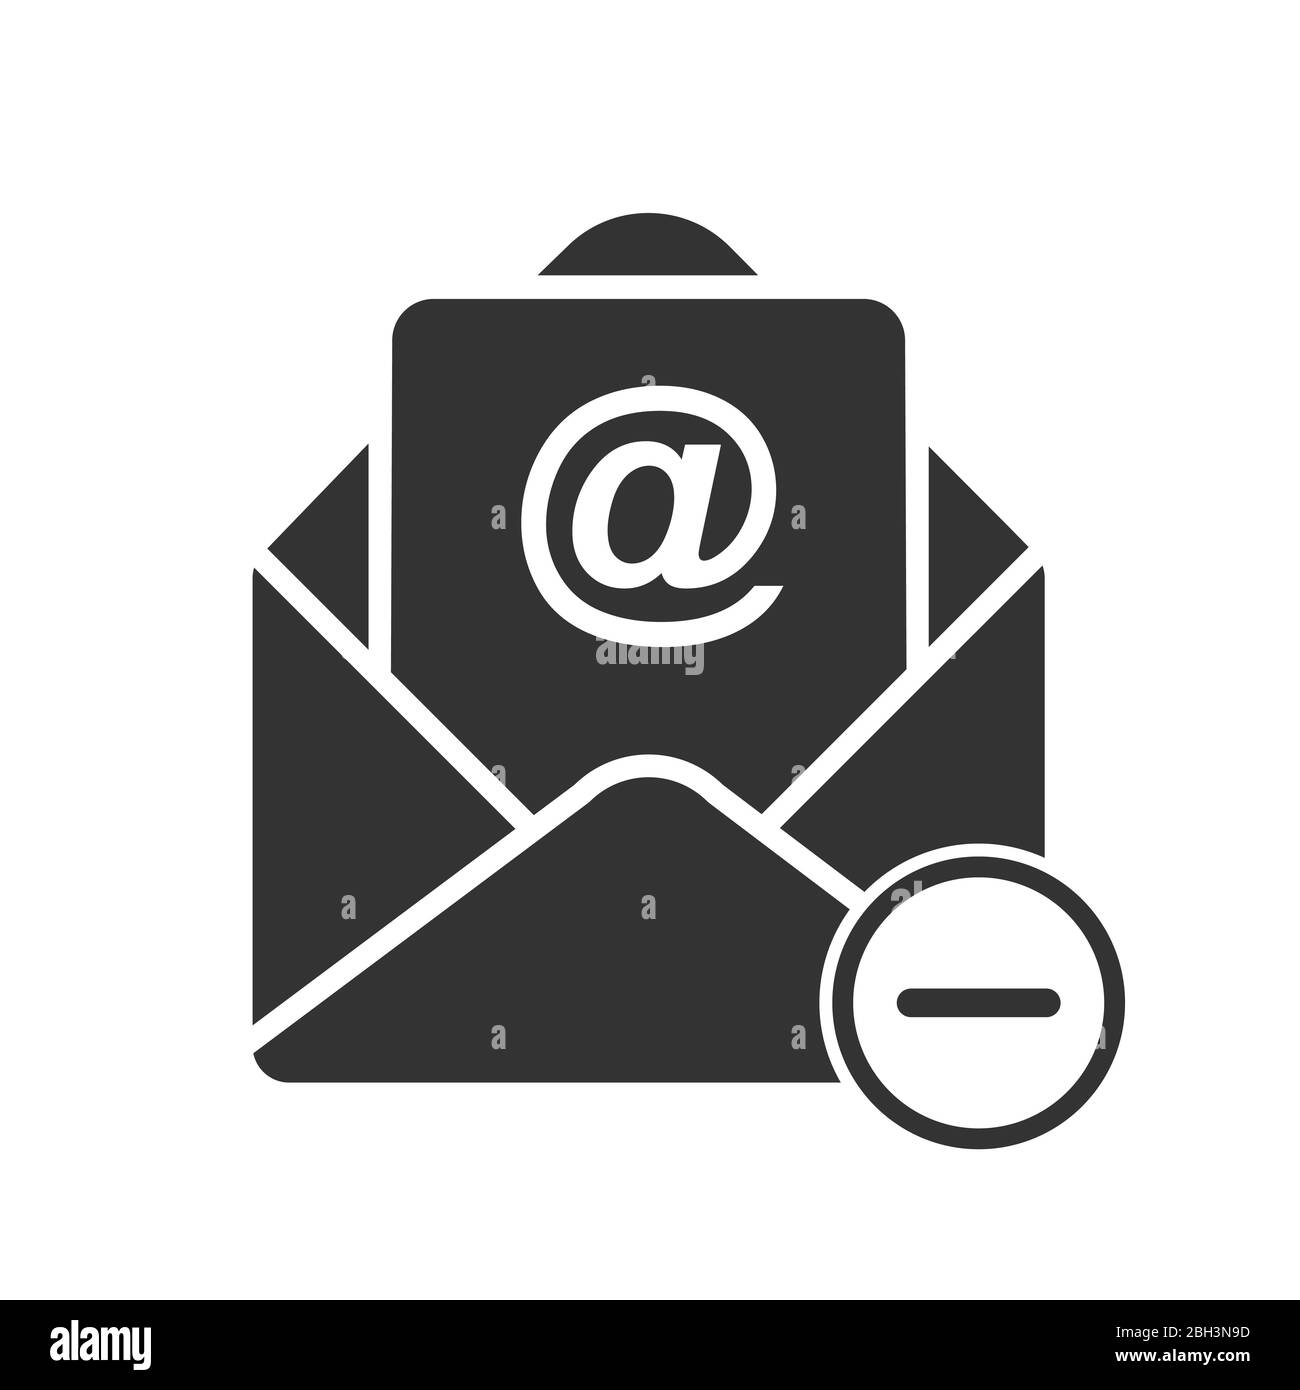 Biểu tượng xóa email đơn giản sẽ giúp cho bạn xoá bỏ những email không cần thiết một cách nhanh chóng và tiện lợi. Hãy xem hình ảnh liên quan và tìm hiểu cách sử dụng biểu tượng xóa email đơn giản để tạo ra hộp thư đến trống trải và gọn gàng hơn.